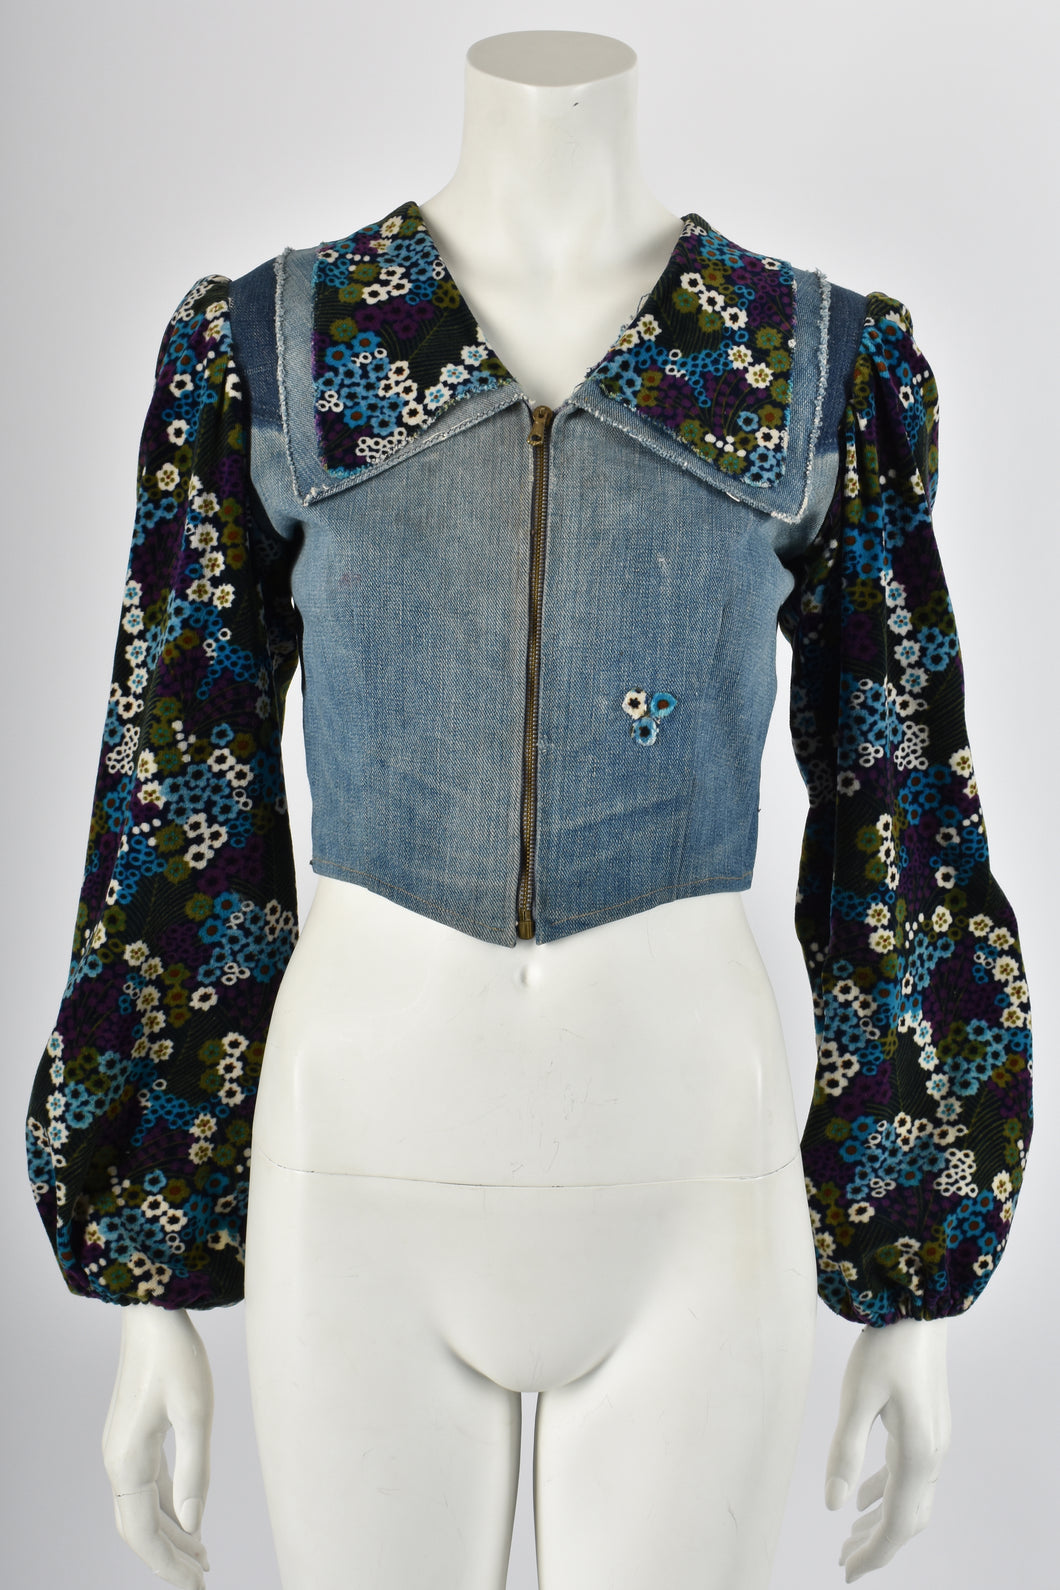 VINTAGE 1970s denim patchwork jacket